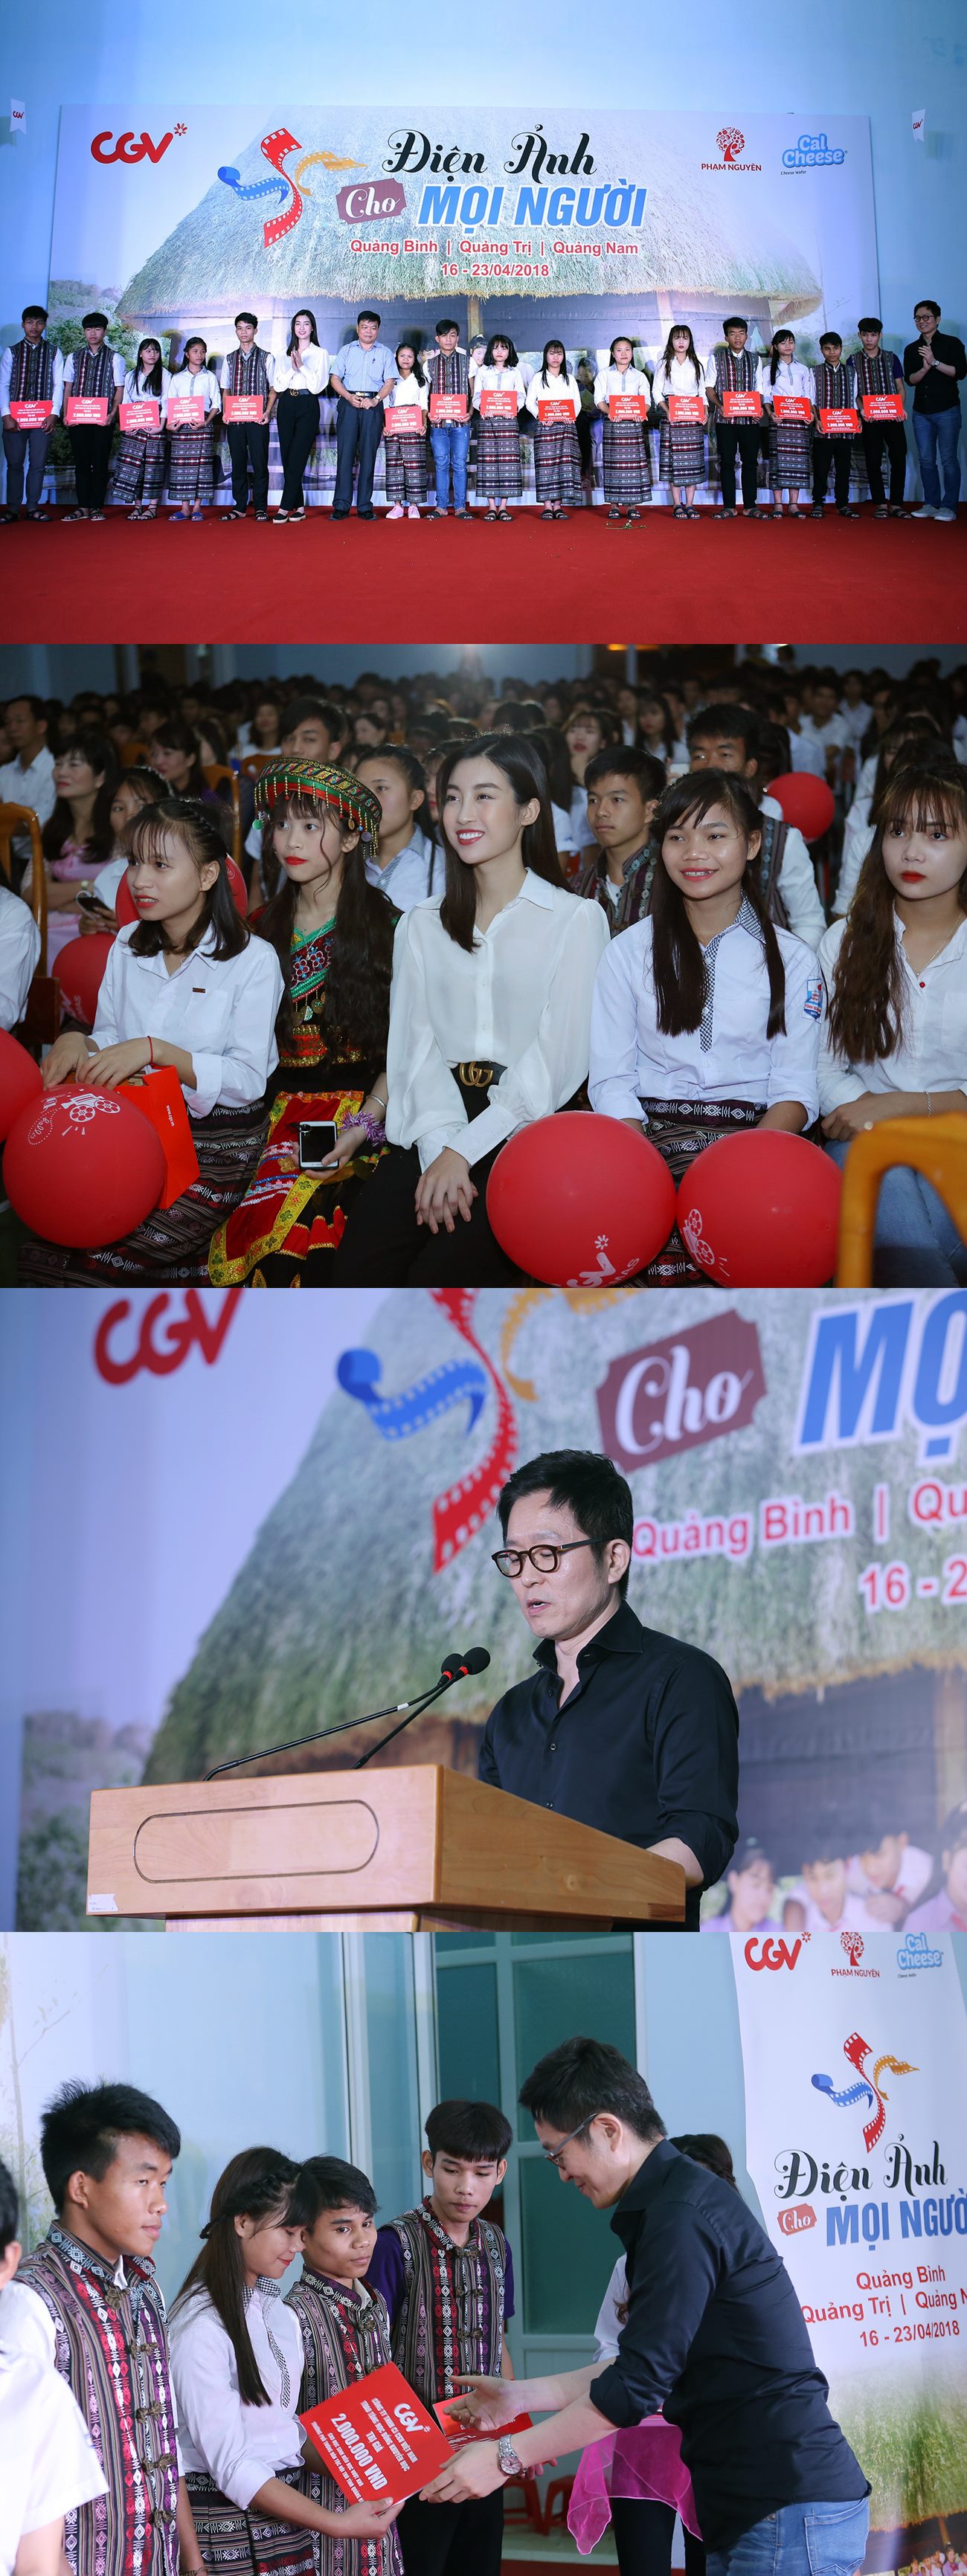 CGV, 베트남서 '찾아가는 영화관' 개최...2,500명 관람 혜택